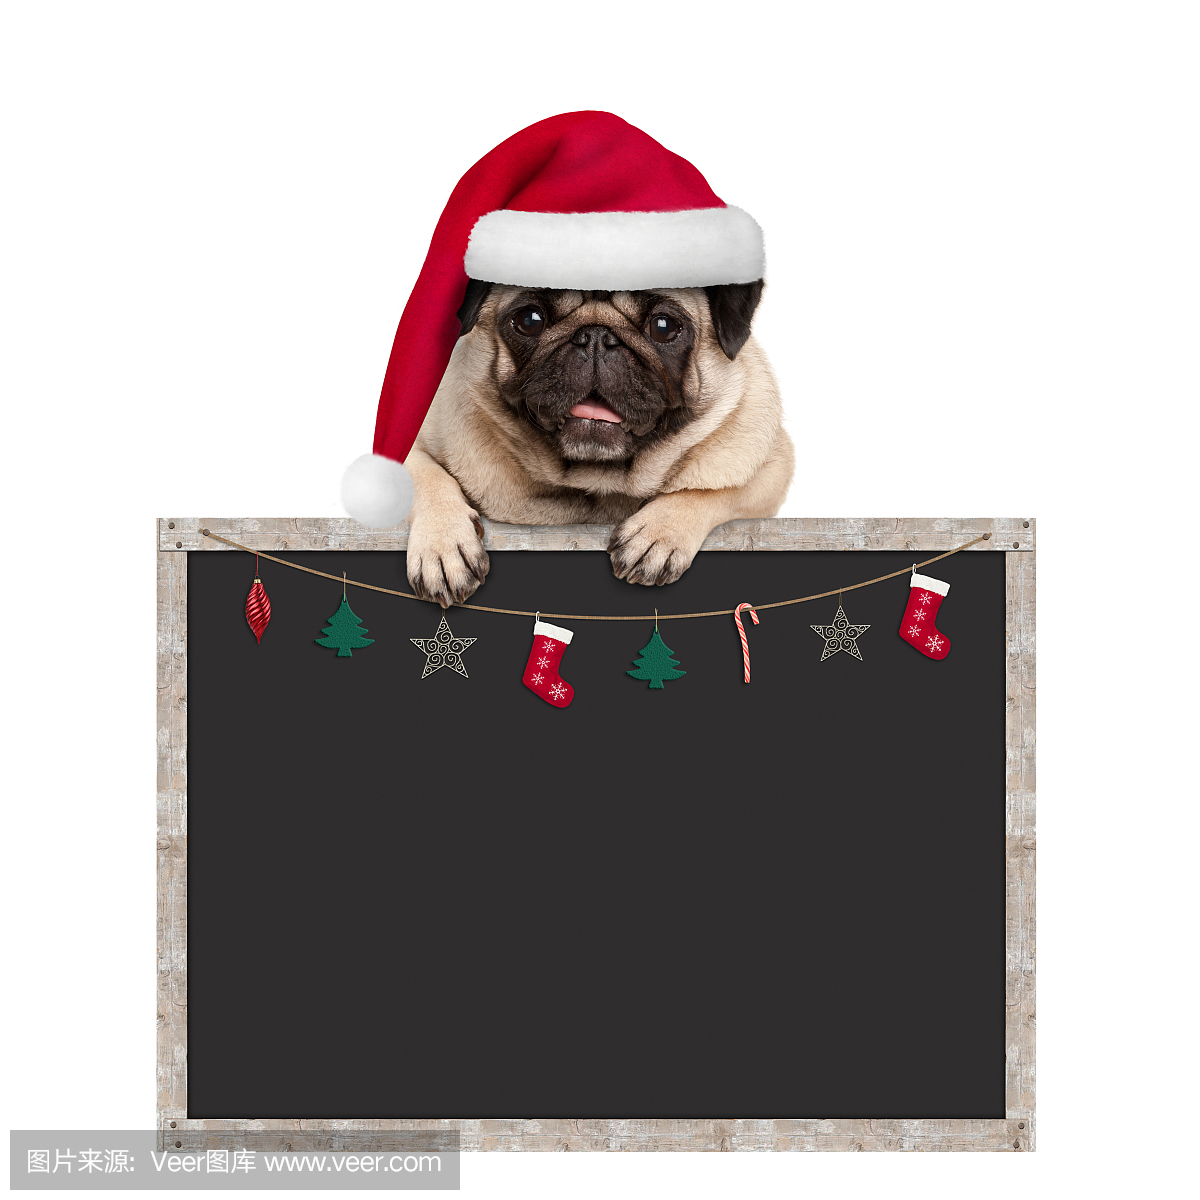 可爱的哈巴狗小狗戴着圣诞老人的帽子,用爪子